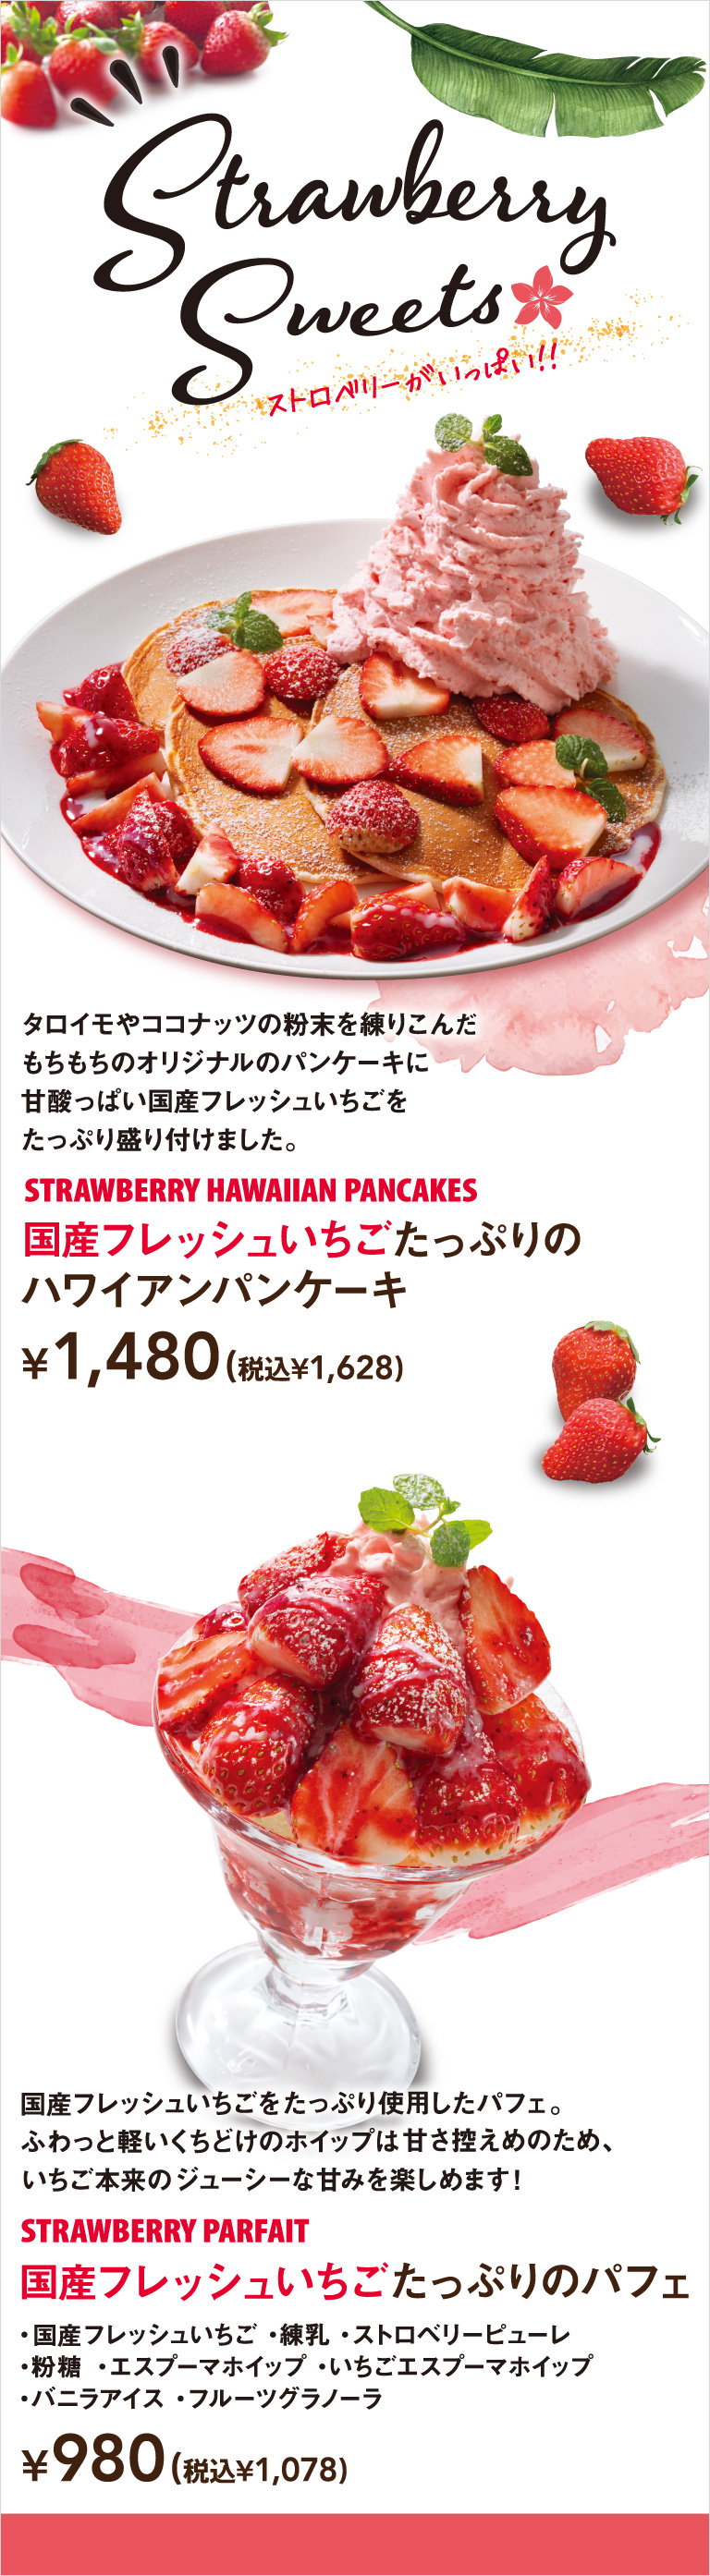 国产新鲜草莓夏威夷薄煎饼国产新鲜草莓圣代